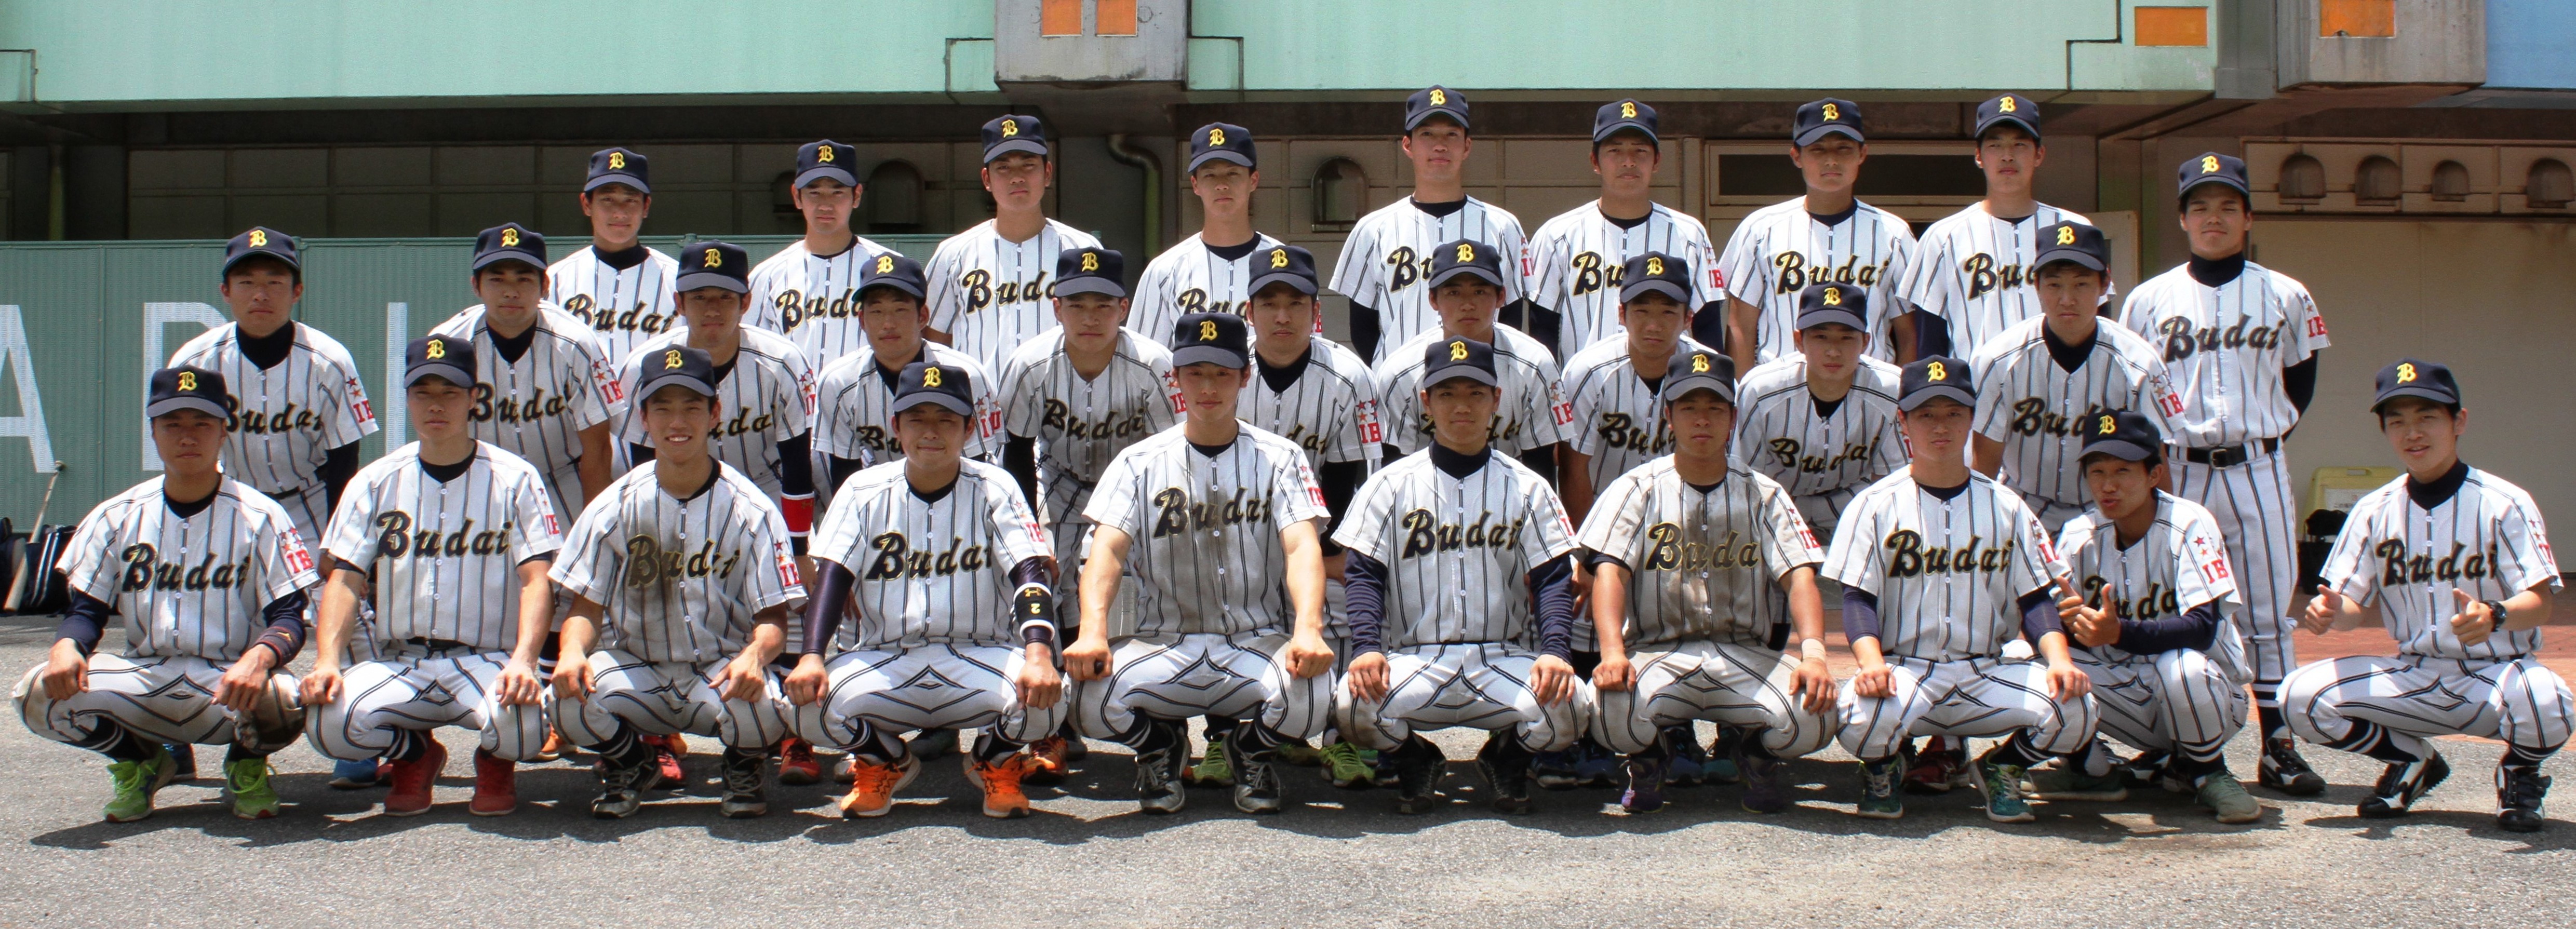 千葉 県 大学 野球